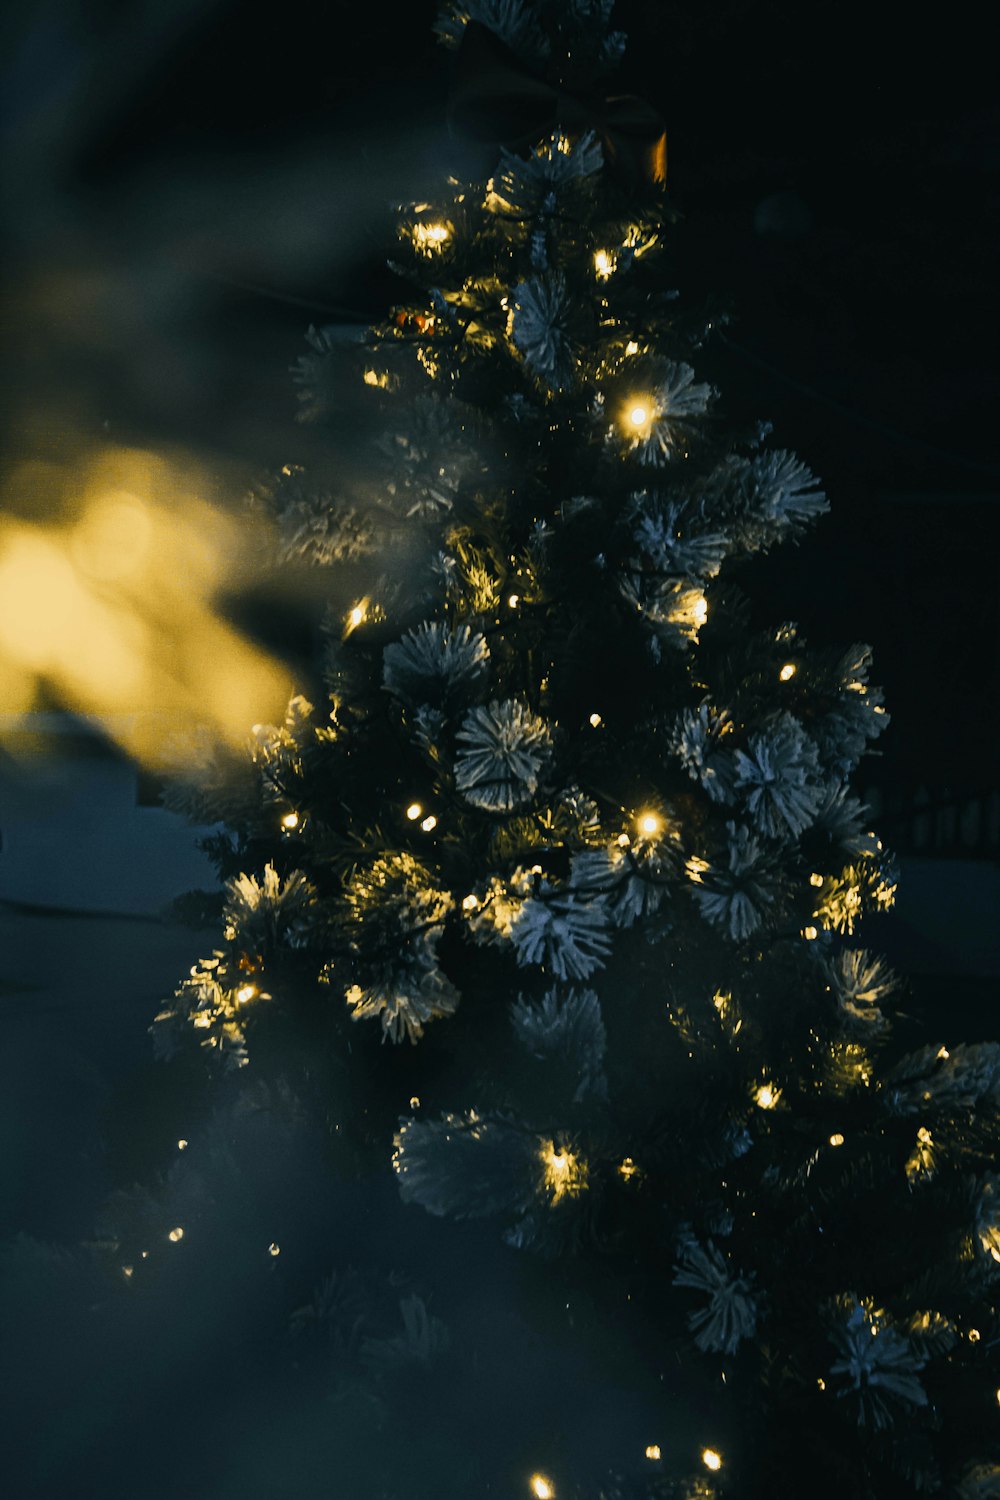 Ein beleuchteter Weihnachtsbaum in einem dunklen Raum